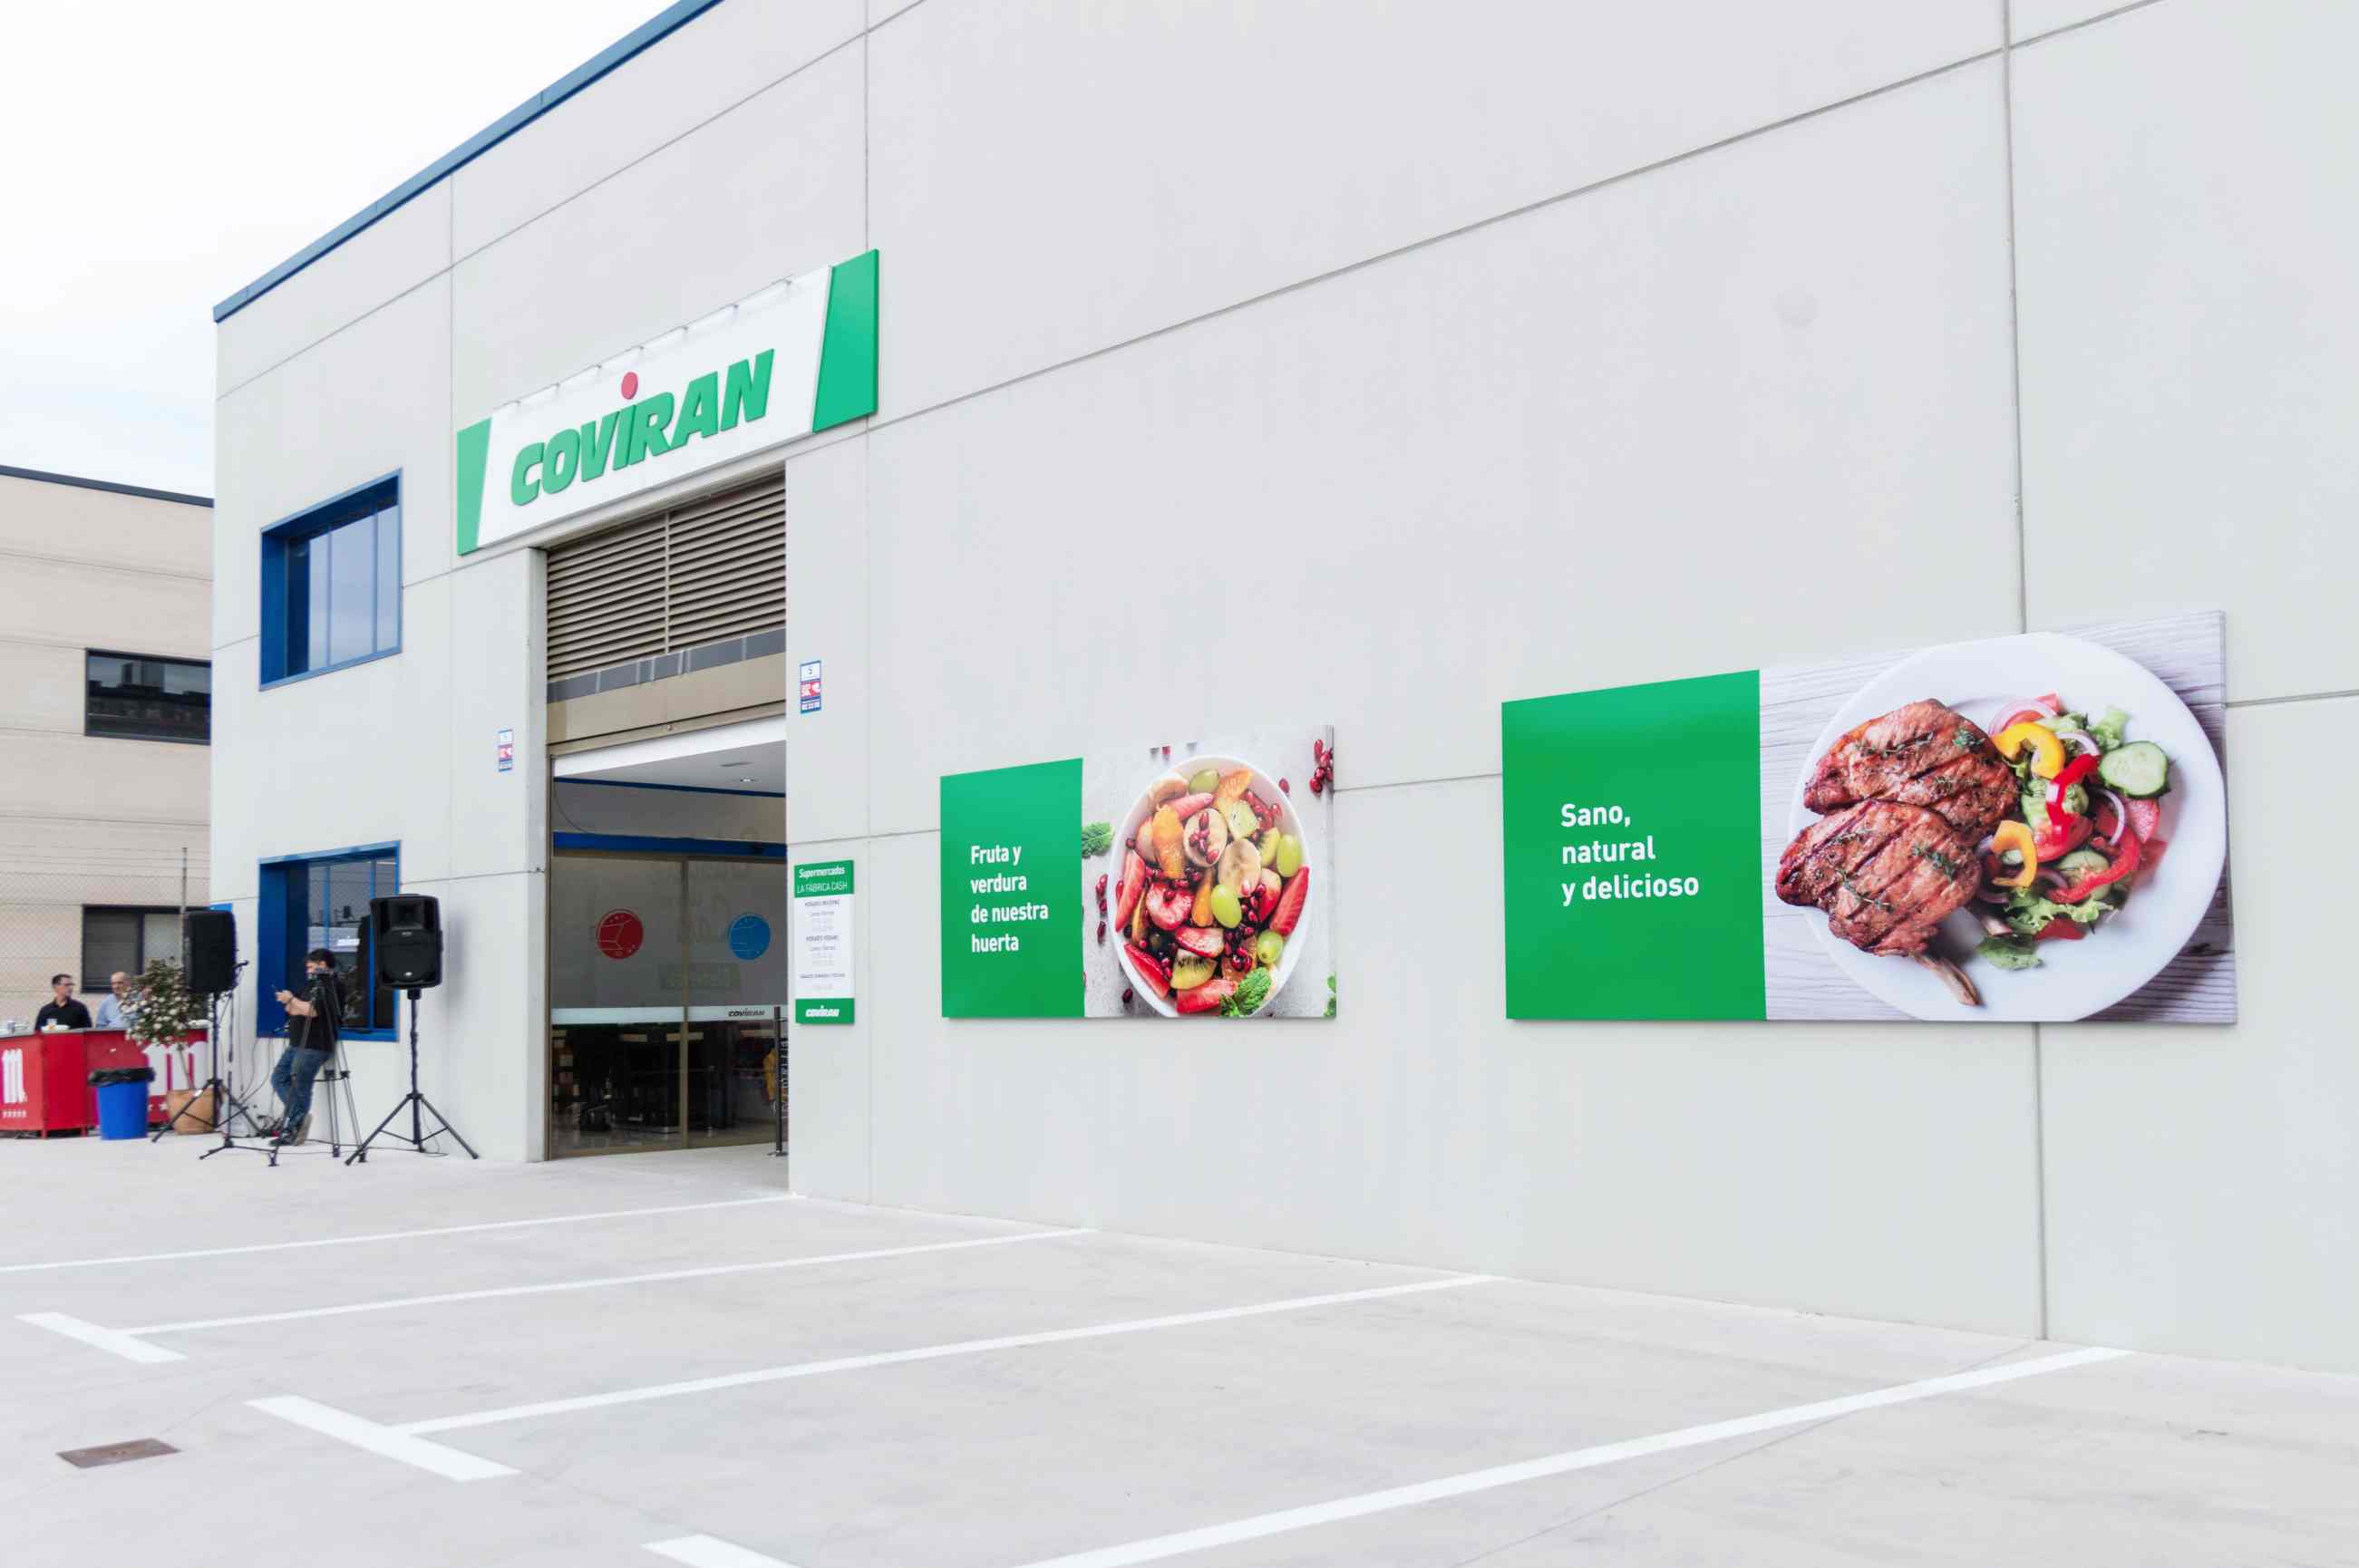 La Criptanense inaugura La Fábrica Cash Coviran, el nuevo supermercado de Campo de Criptana.